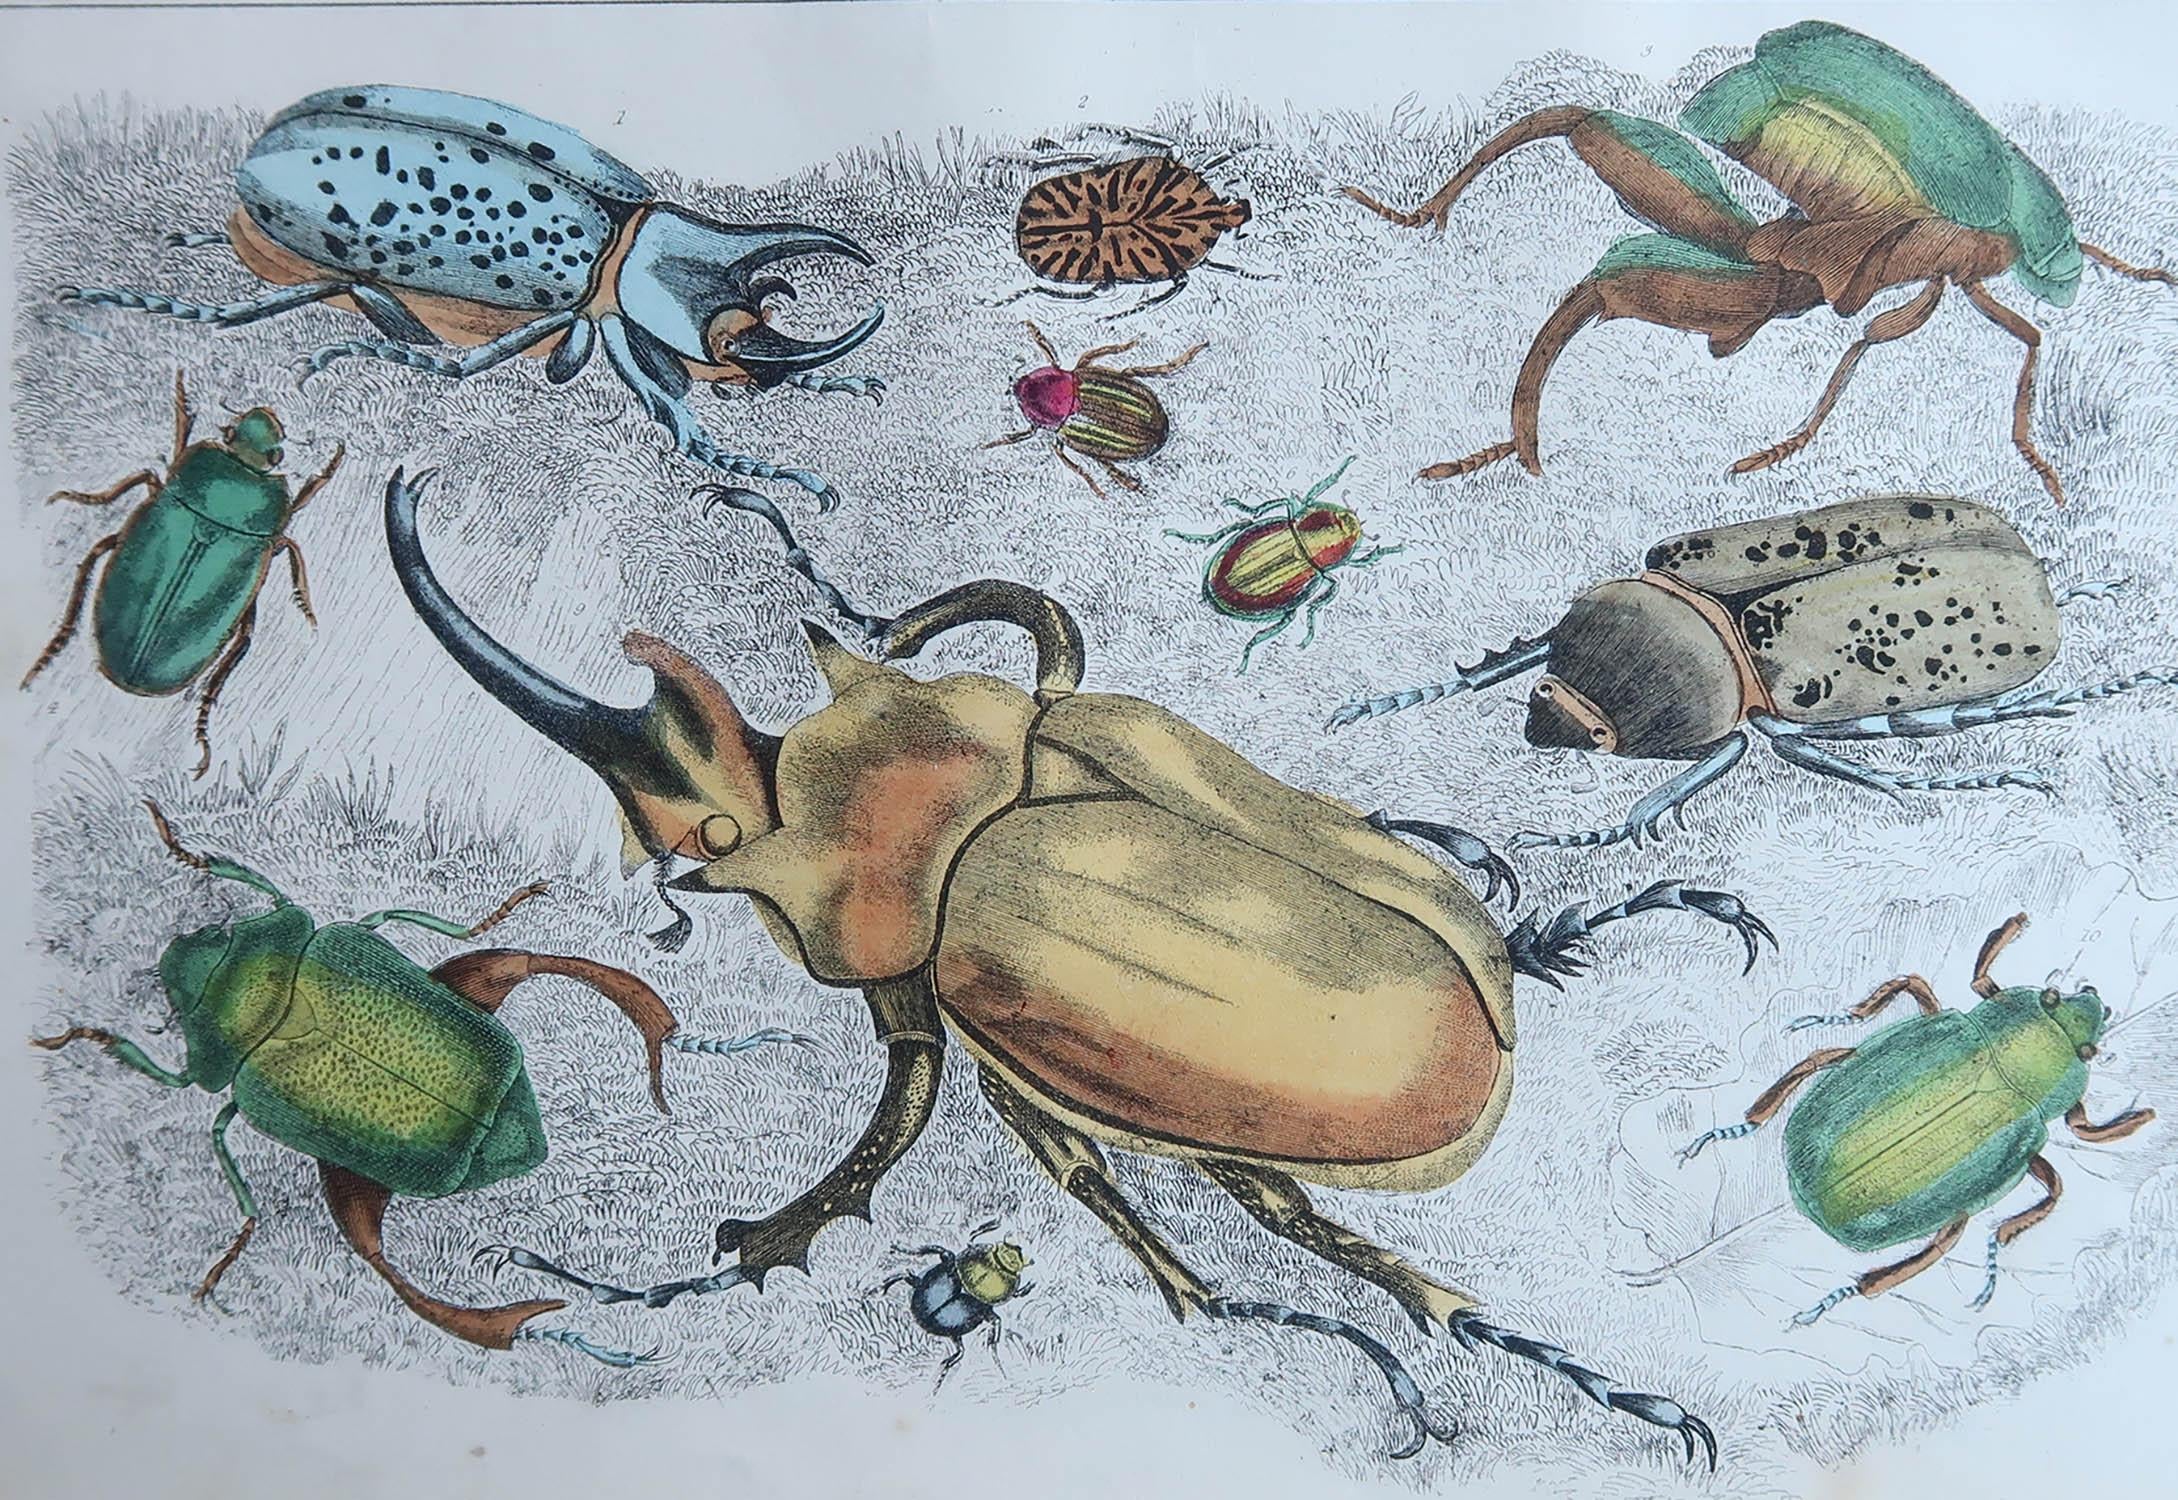 Tolles Bild von Käfern.

Ungerahmt. So haben Sie die Möglichkeit, Ihre eigene Auswahl an Rahmen zu treffen.

Lithographie nach Cpt. Braun mit Originalfarbe.

Veröffentlicht, 1847.








